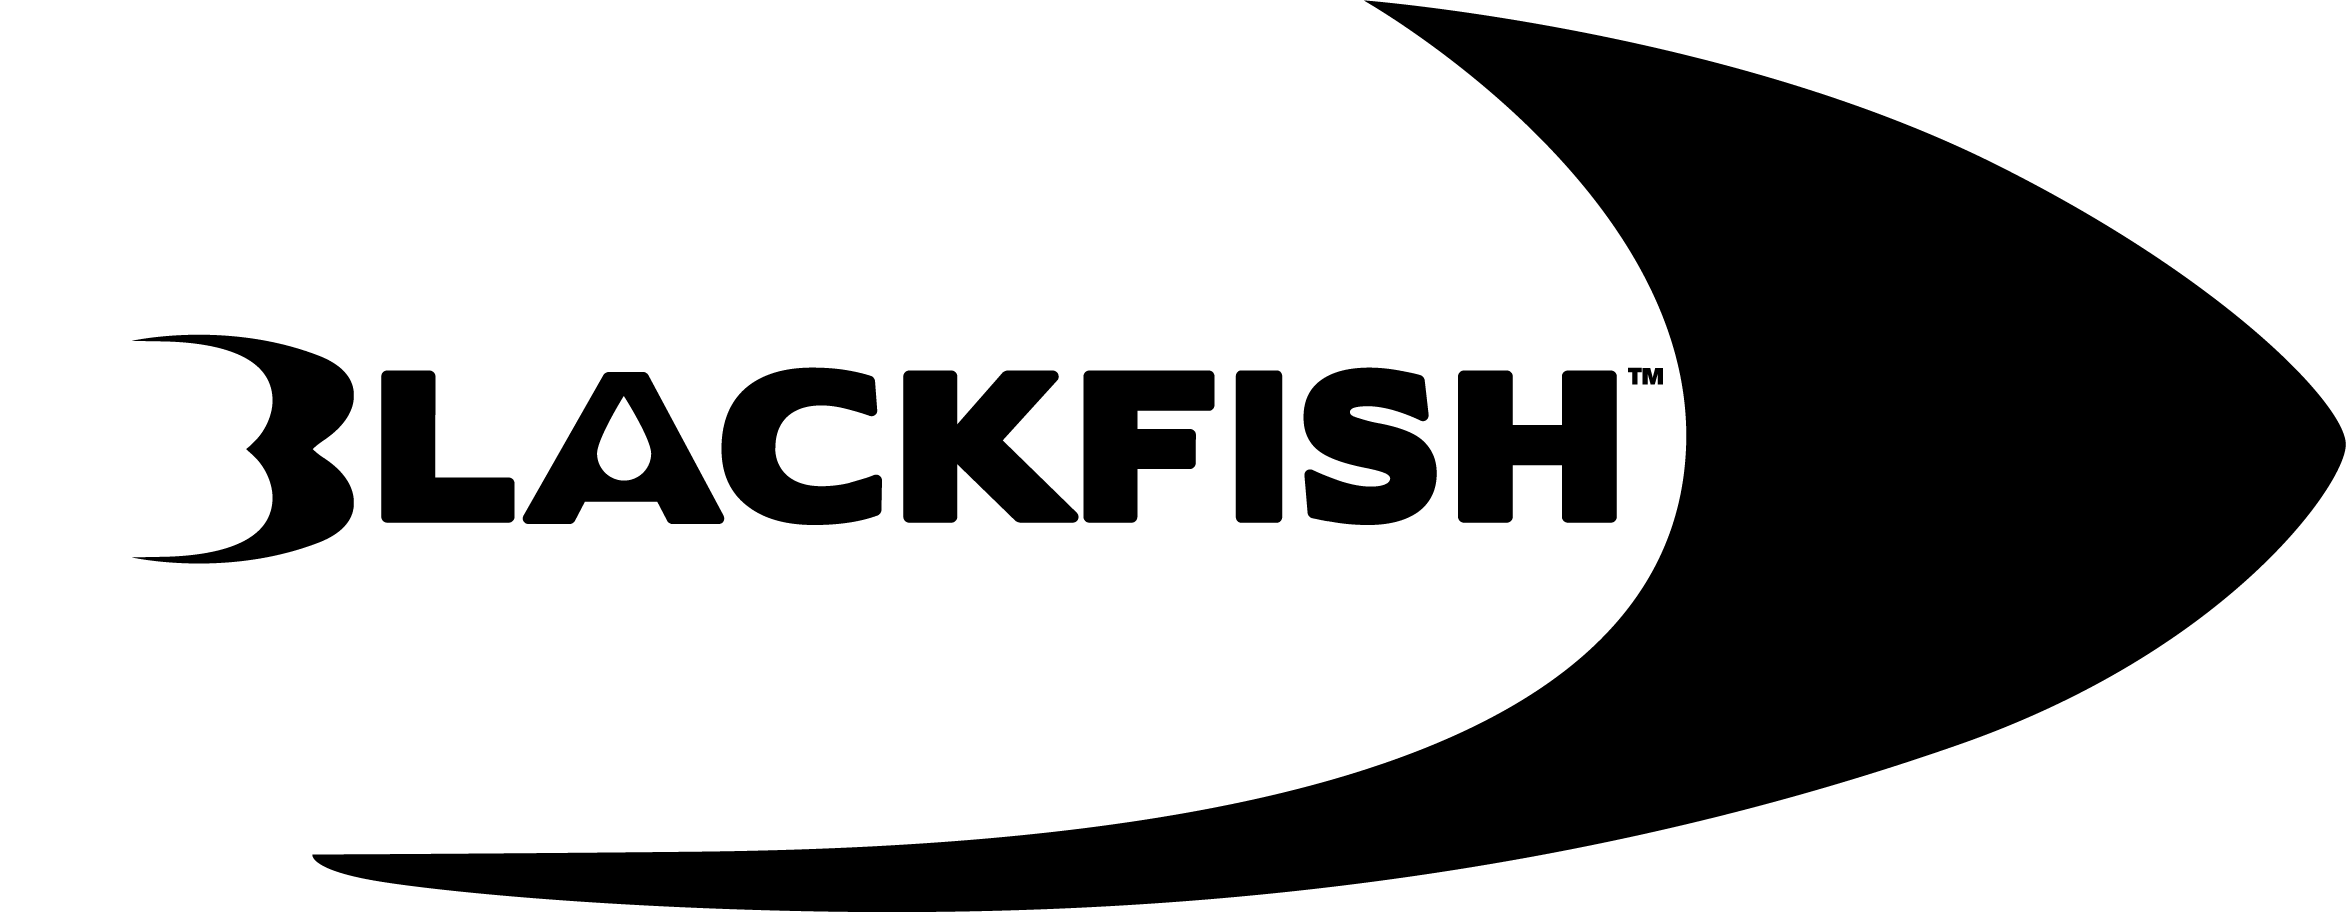 Blackfish_Logo-01 cropped.png